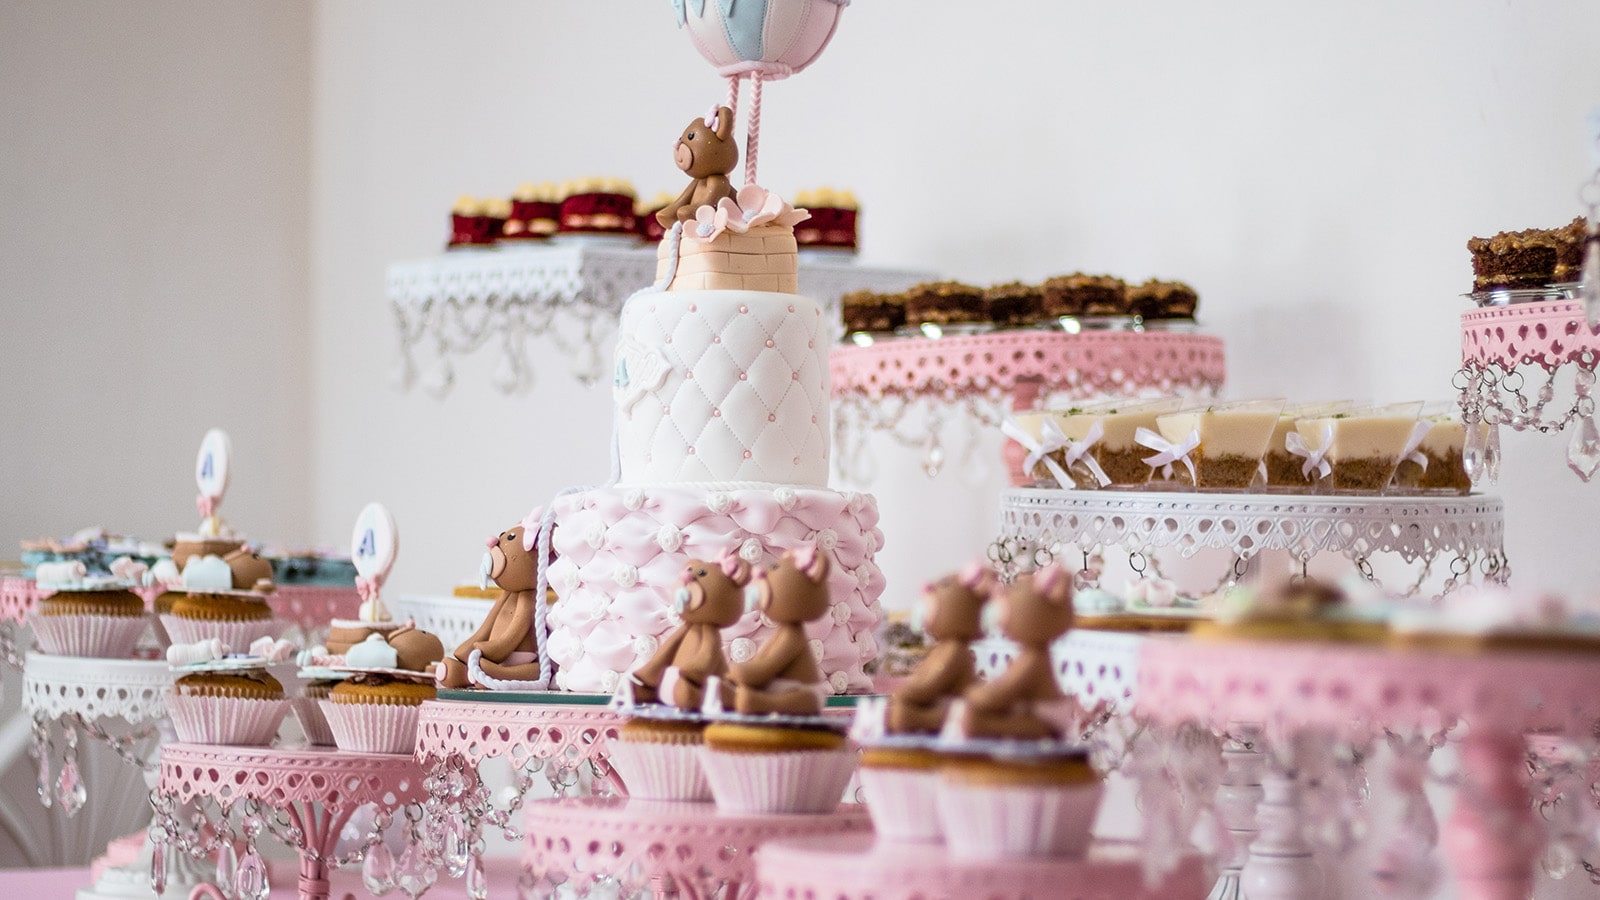 Gâteau d'anniversaire événement traiteur pâtissier boulanger